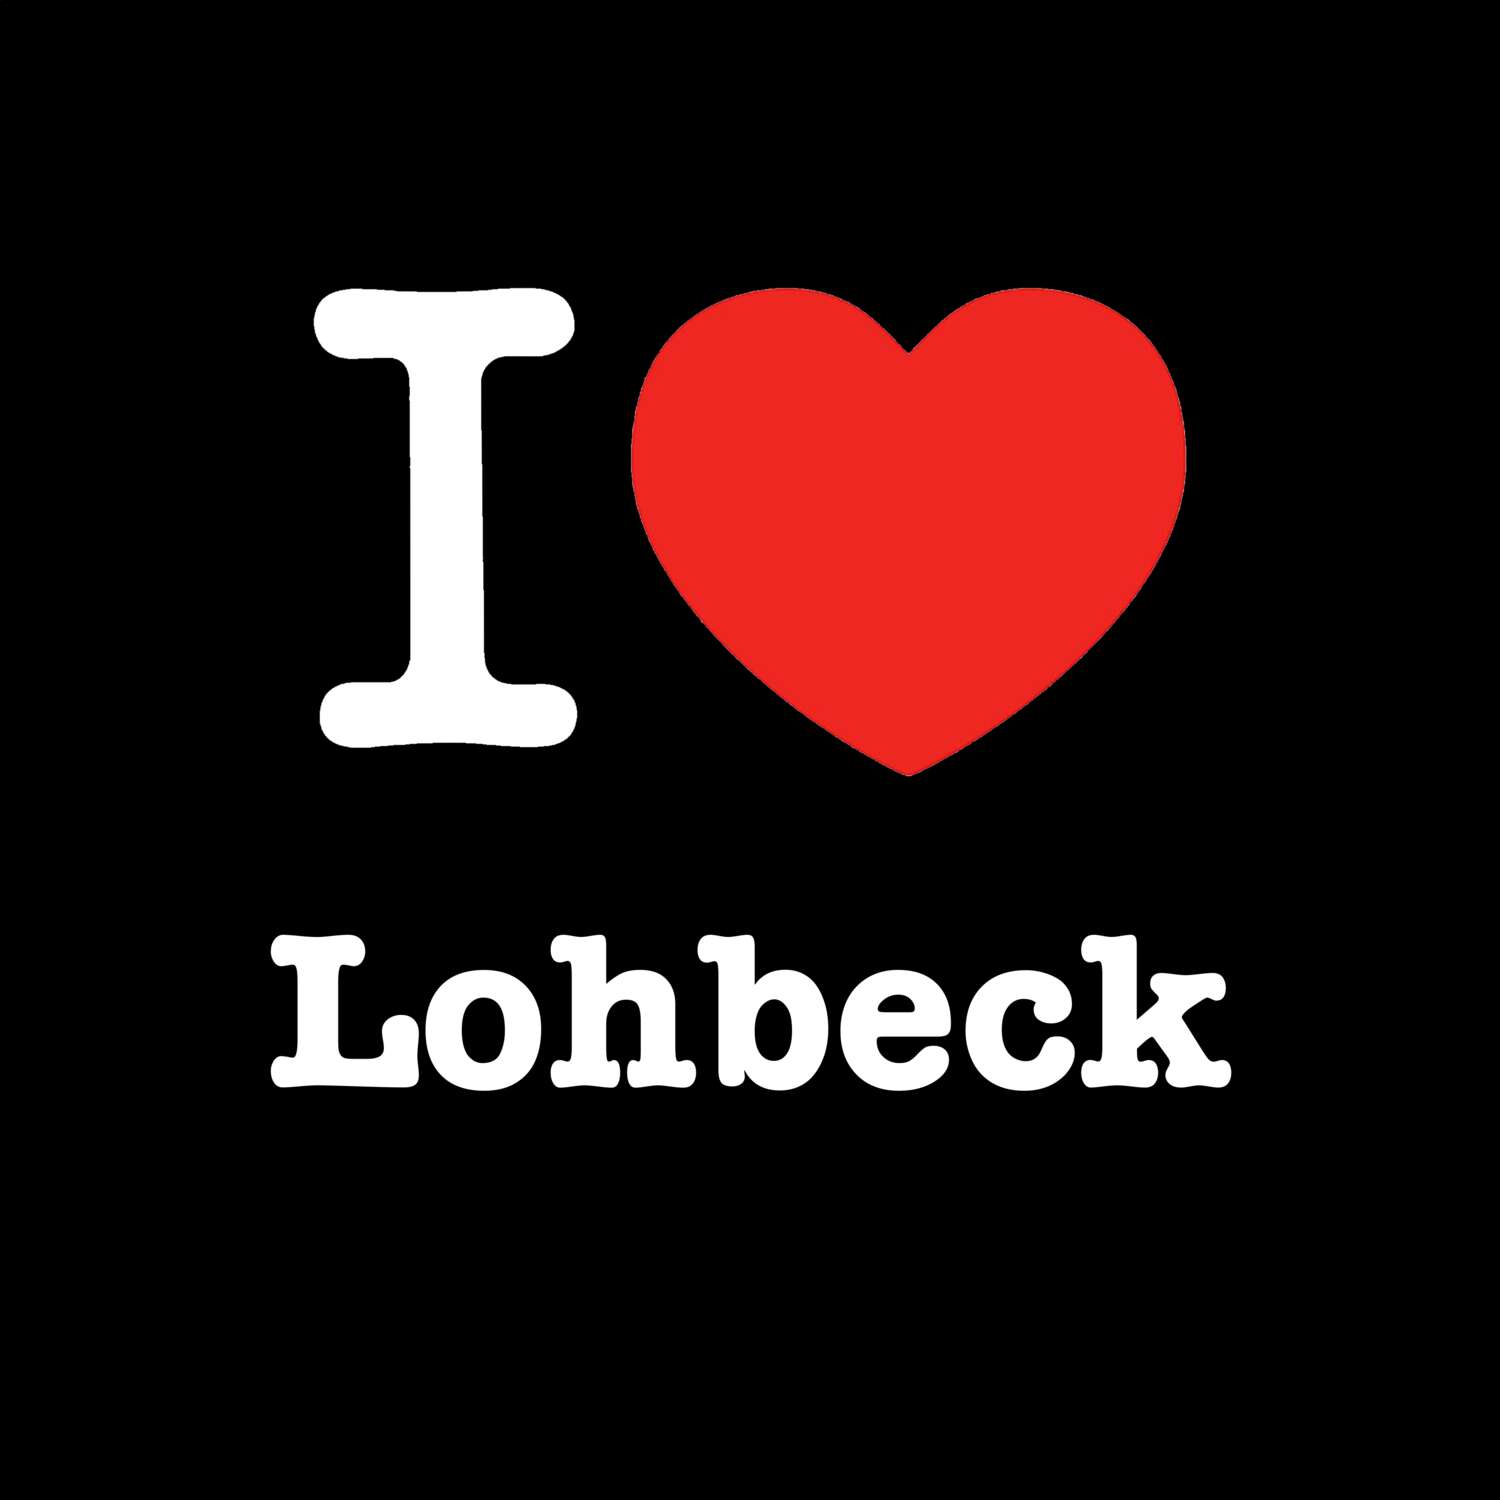 Lohbeck T-Shirt »I love«